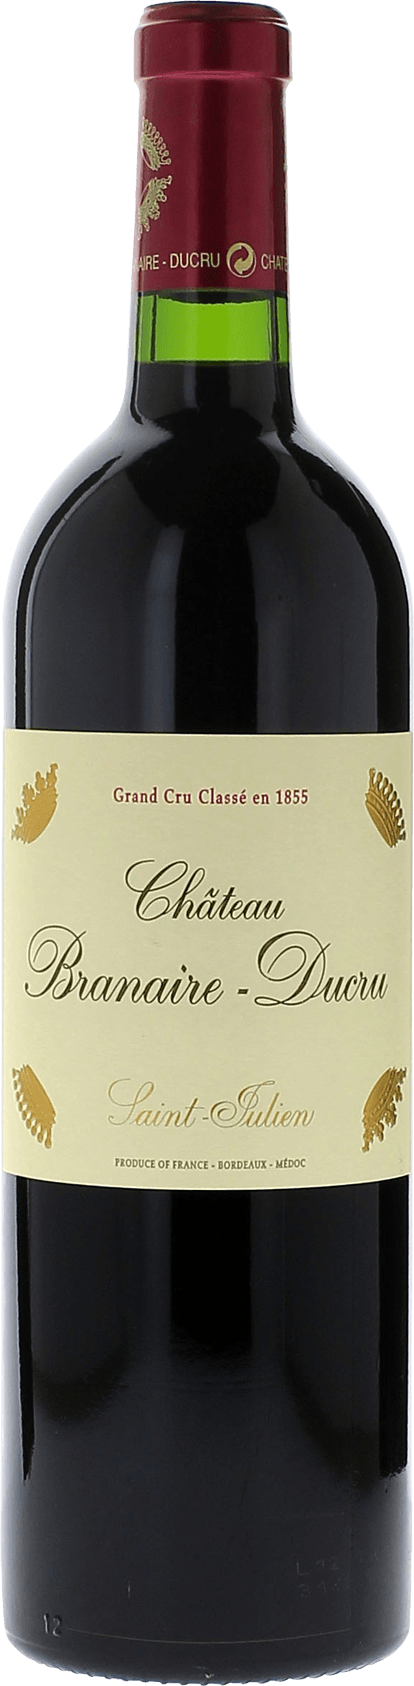 Branaire ducru 1990 4me Grand cru class Saint-Julien, Bordeaux rouge